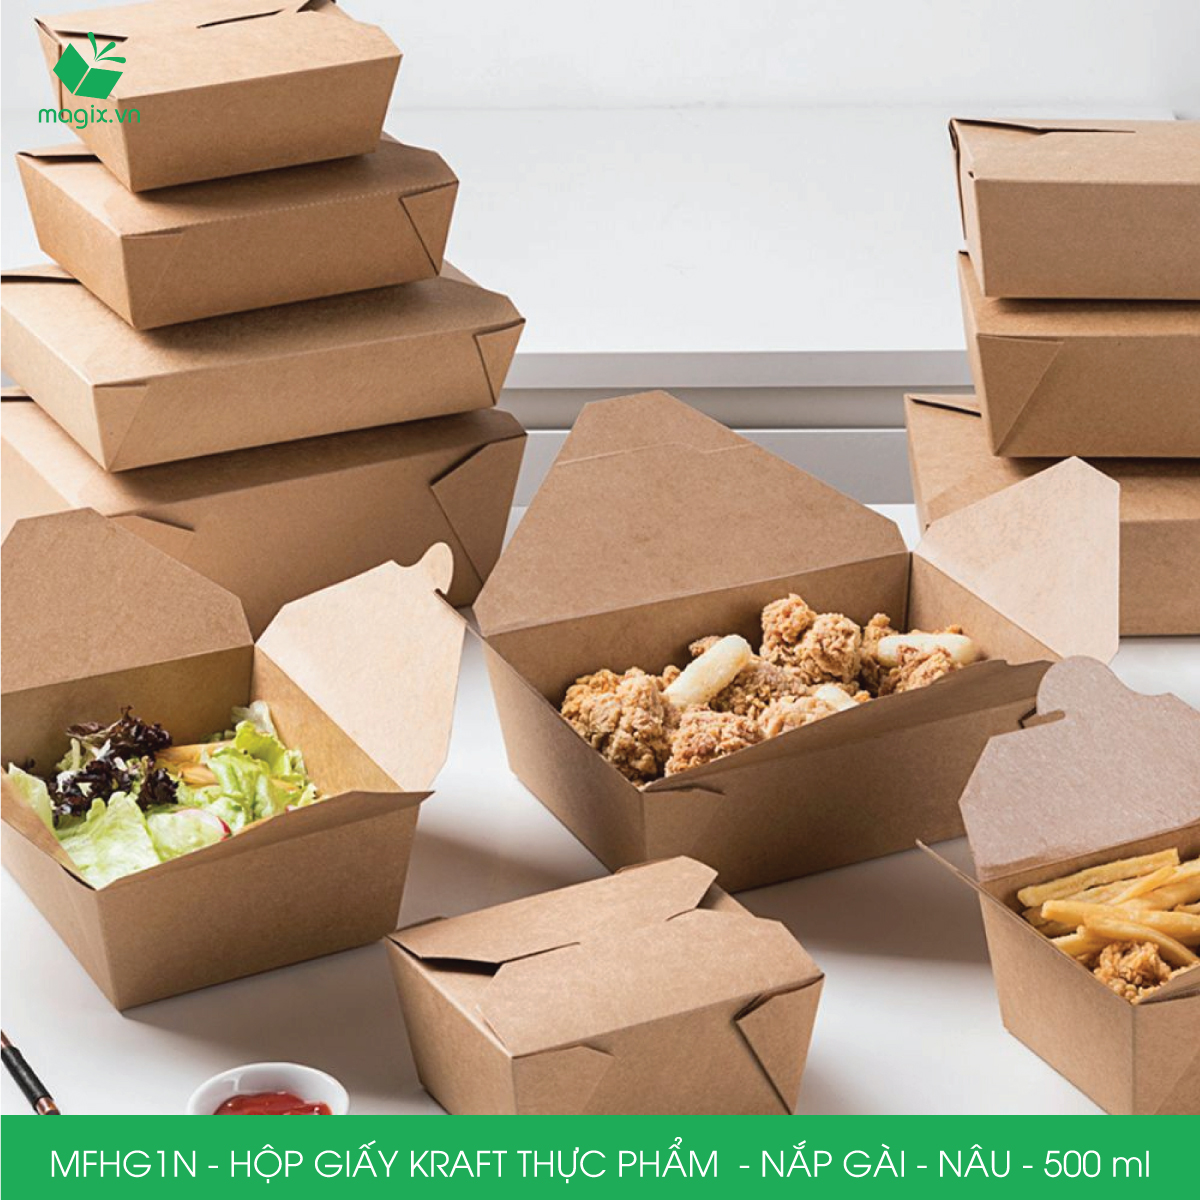 MFHG1N - 50 hộp giấy kraft thực phẩm 500ml, hộp giấy nắp gập màu nâu đựng thức ăn, hộp giấy nắp gài gói đồ ăn mang đi